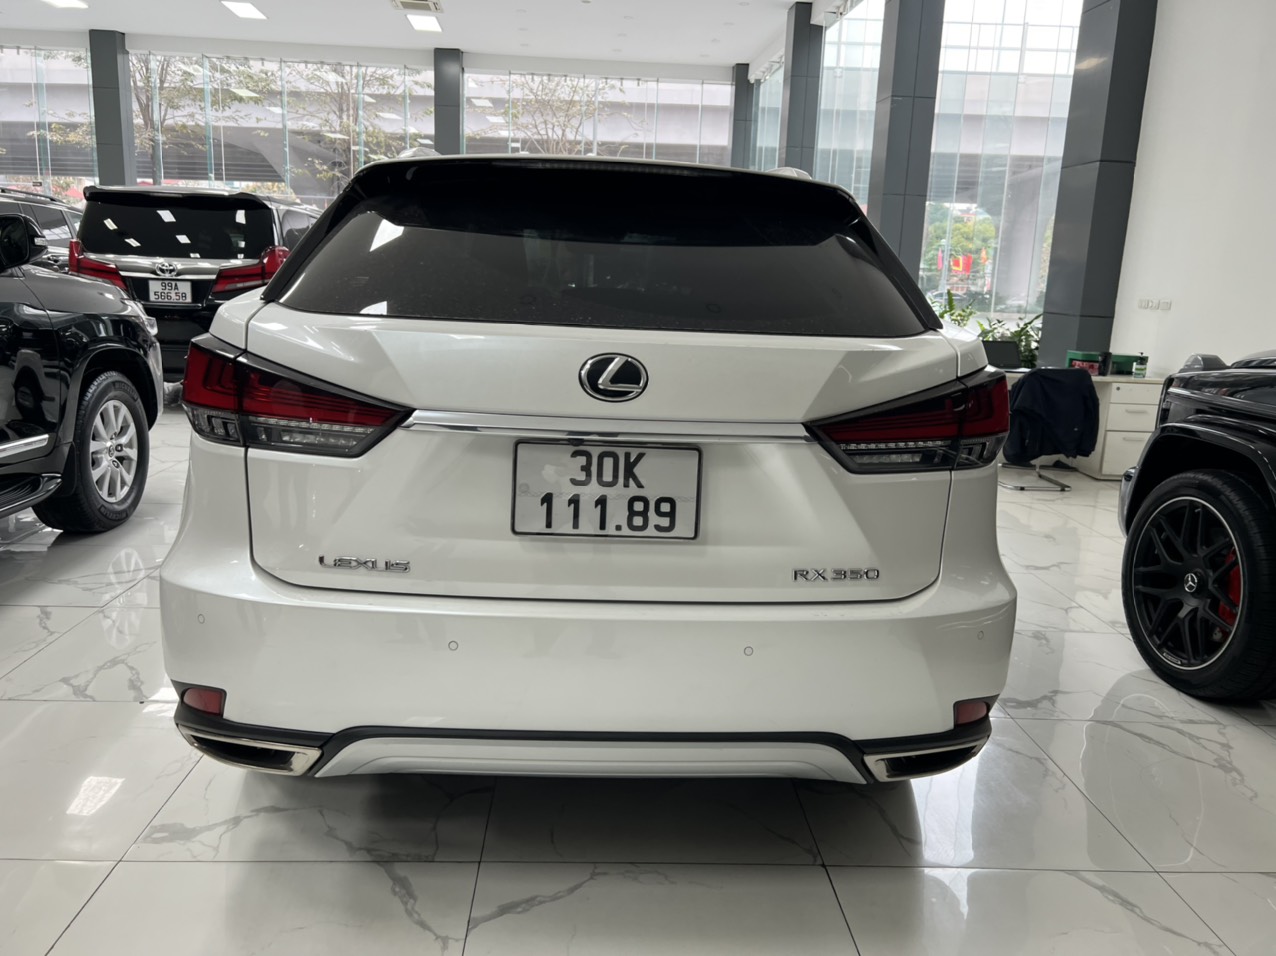 Em bán chiếc xe Lexus RX350 Luxury xe nhập chính hãng sản xuất năm 2019 đăng ký tên cá nhân, xe rất là mới biển đẹp-4